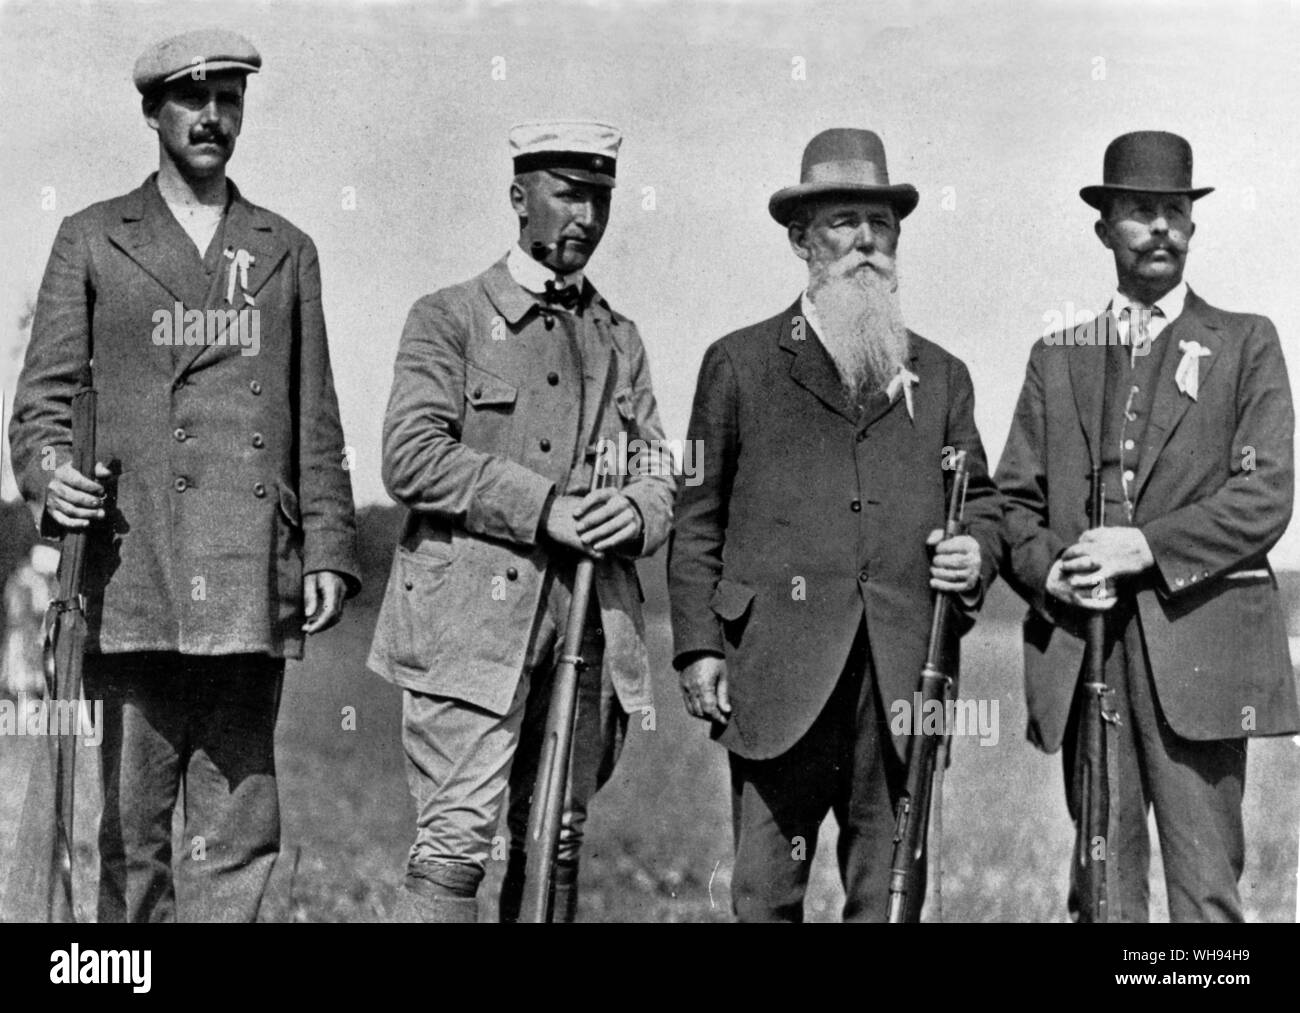 1912 Die Olympischen Spiele in Stockholm von links nach rechts Alfred  Siege, Ake Lundeberg, Oscar Siege und Olof Arvidsson Schweden  Stockfotografie - Alamy